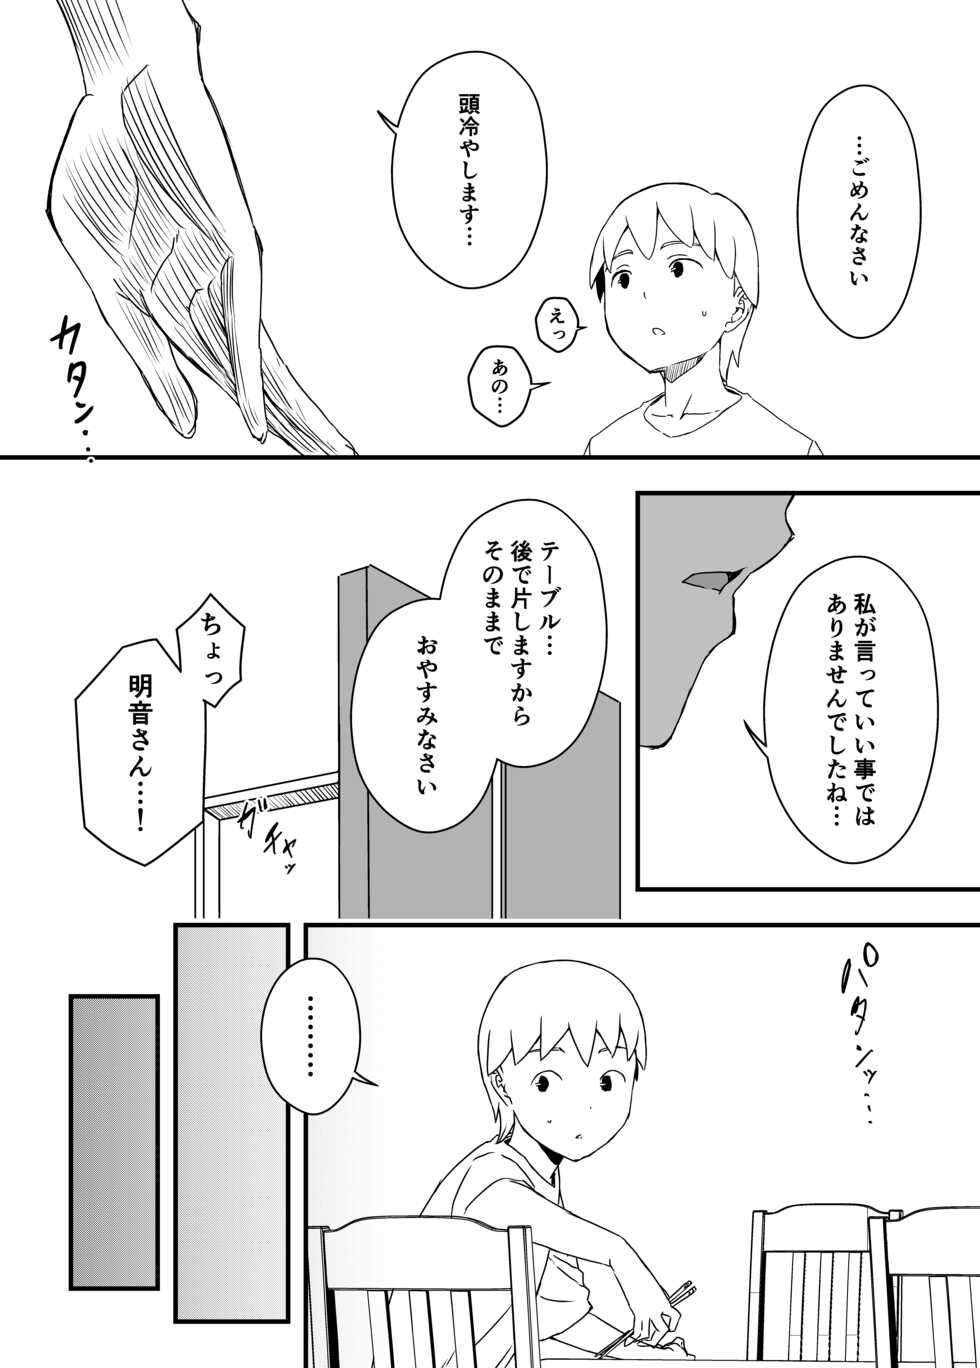 [Senaka] Giri no Ane to no 7-kakan Seikatsu - 4 - Page 40